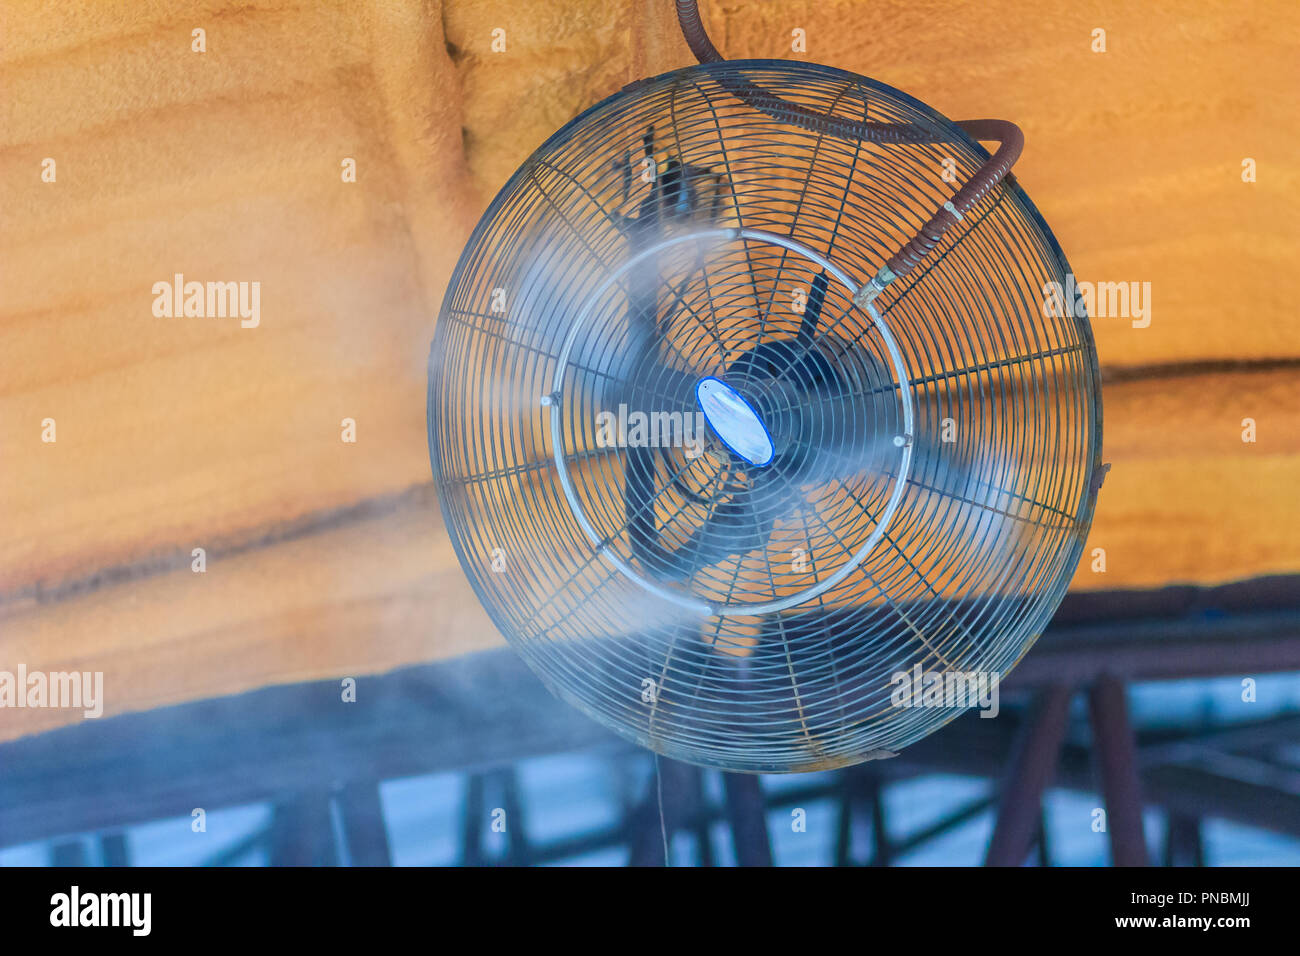 Ventilador de refrigeración de vapor eléctrico en el techo, agua mister  ventilador sopla el agua fresca en el aire para enfriar el área exterior en  un caluroso día de verano Fotografía de